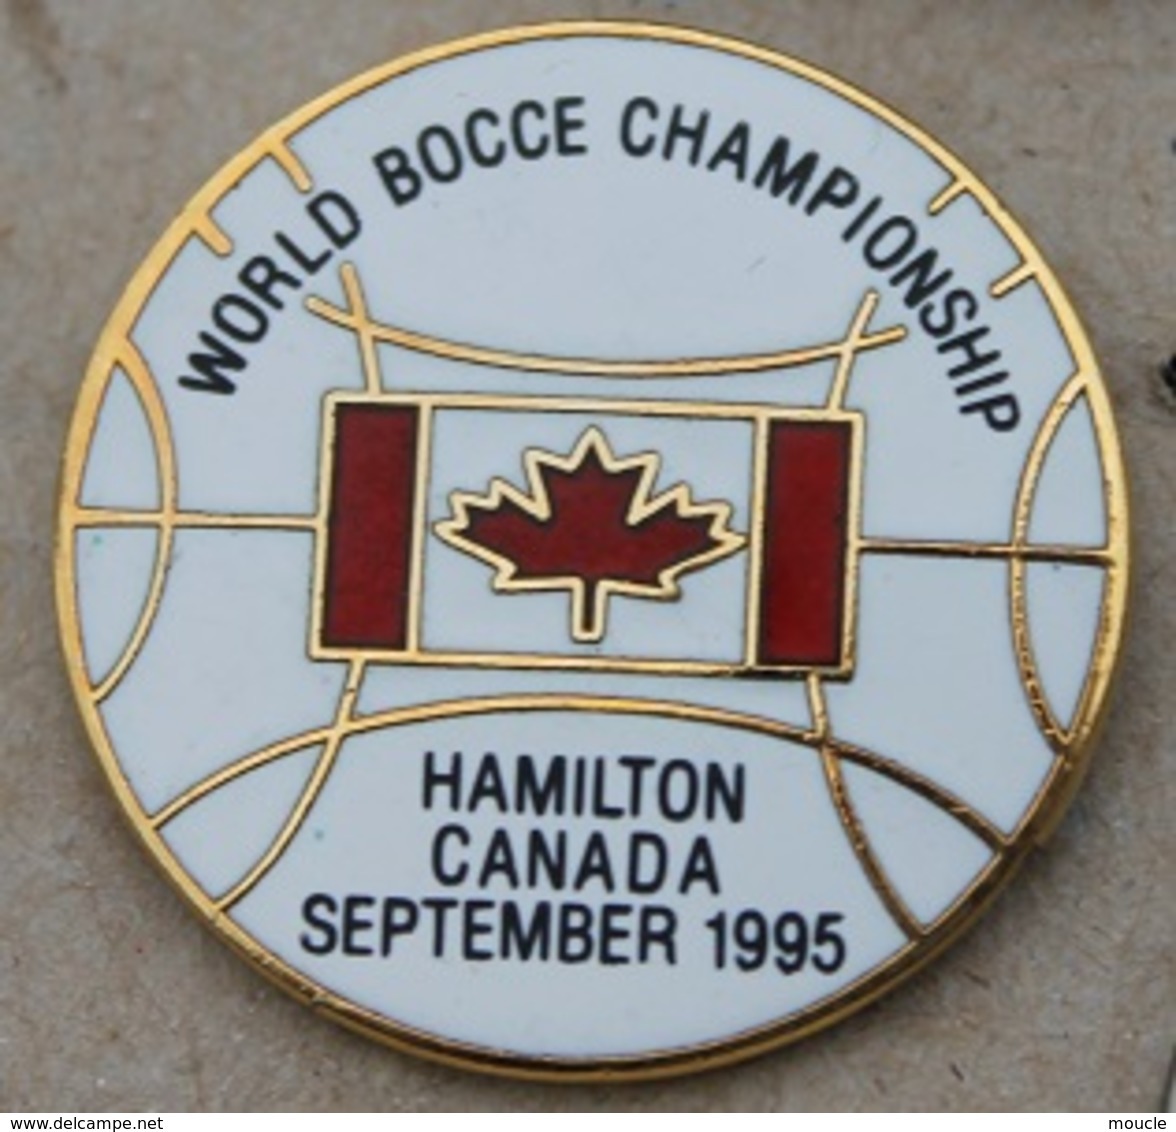 WORLD BOCCE CHAMPIONSHIP - HAMILTON CANADA SEPTEMBER 1995 - FEUILLE D'ERABLE - BOULE - PETANQUE -      (25) - Petanca